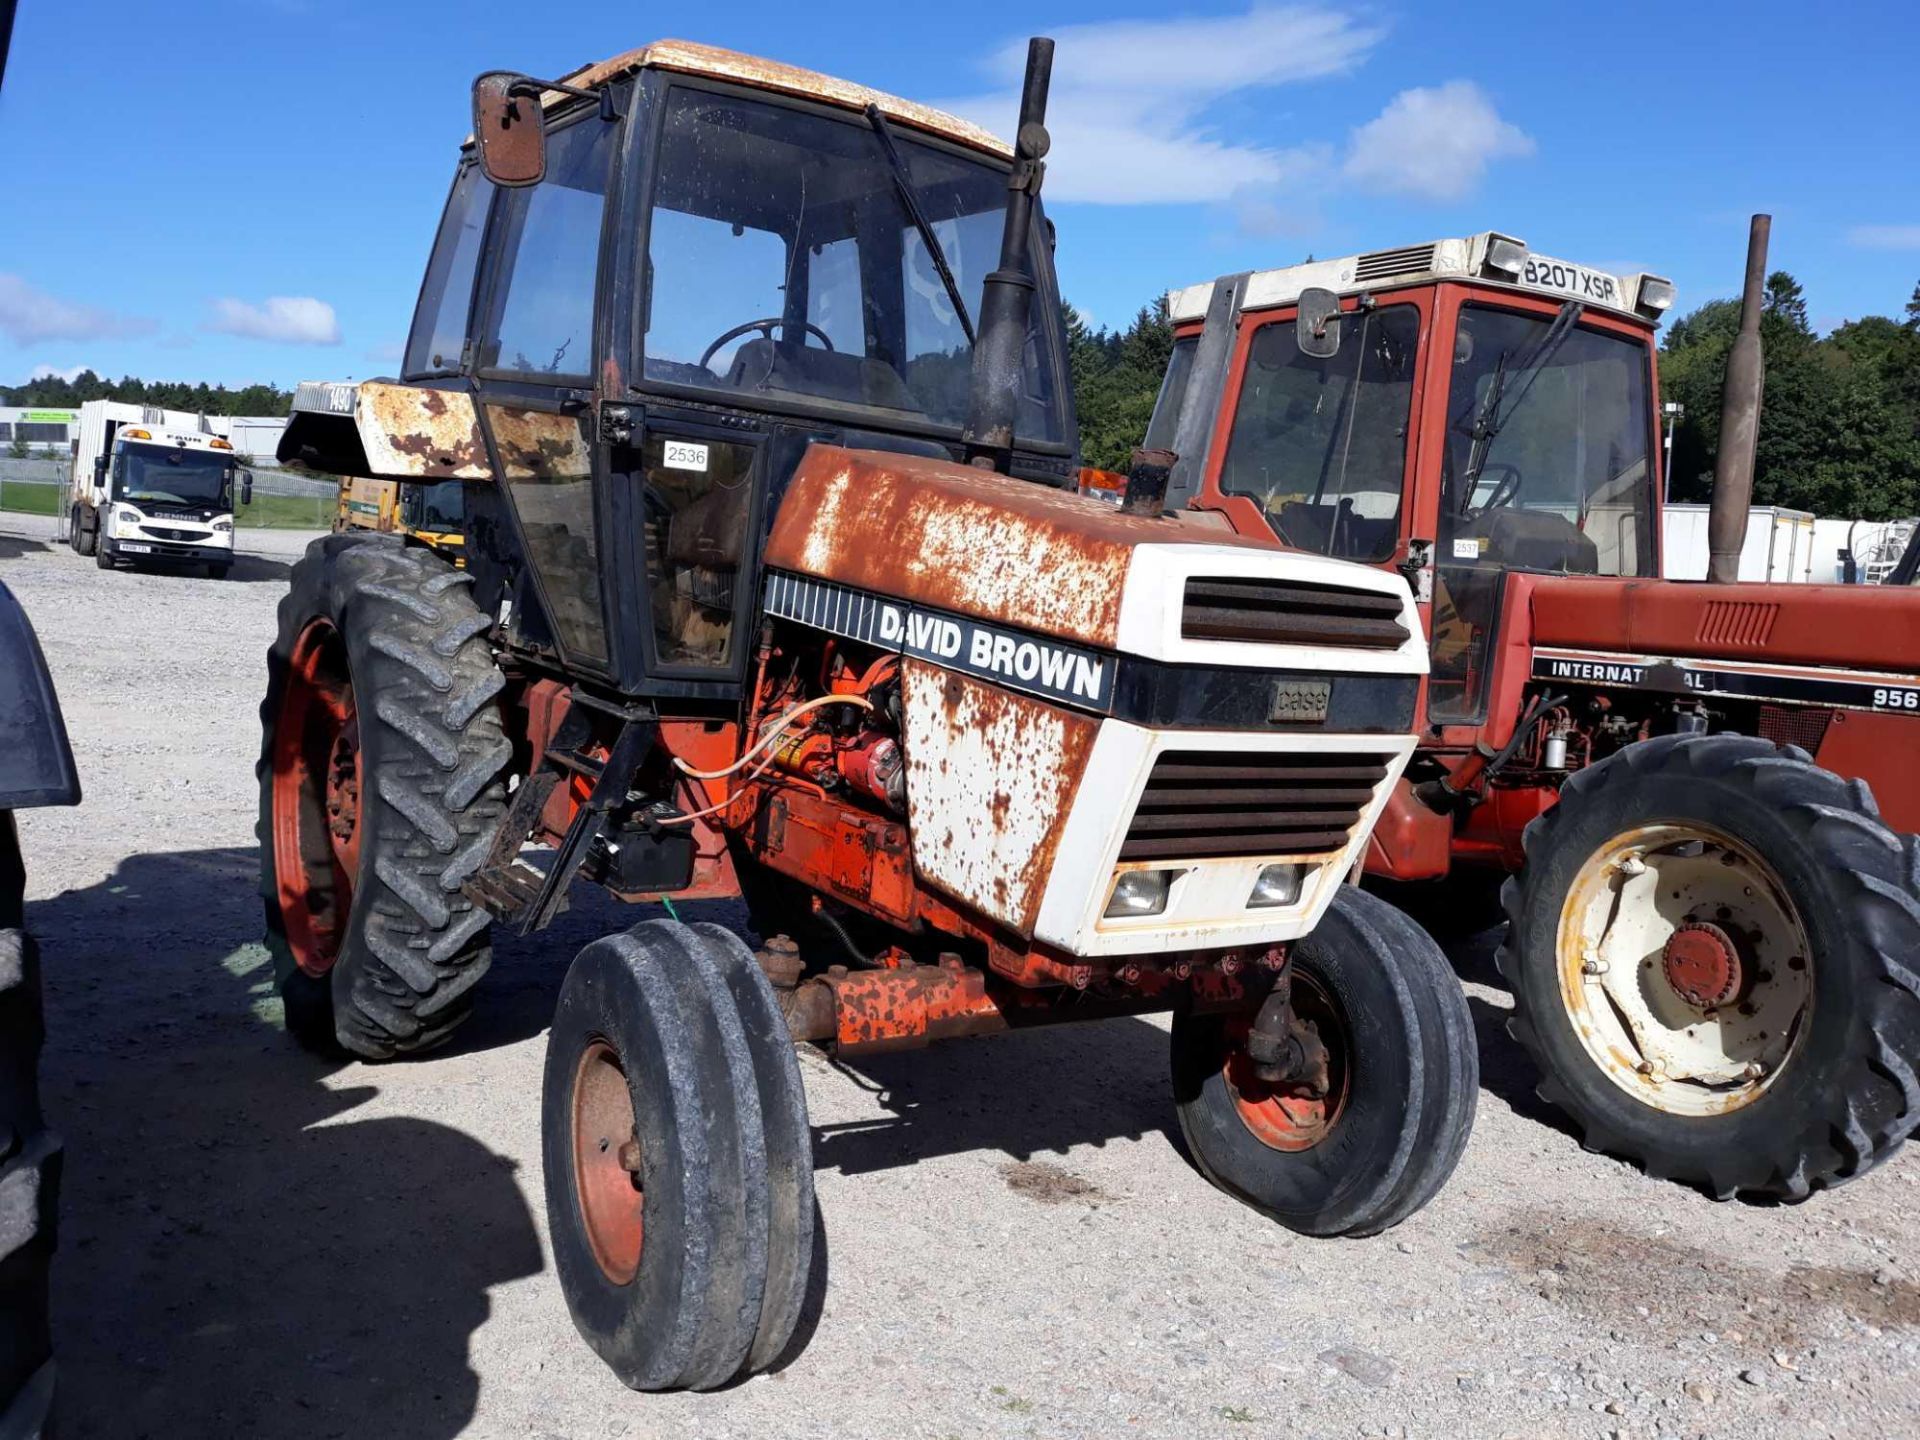 David Brown 1490 - 0cc Tractor - Bild 2 aus 4